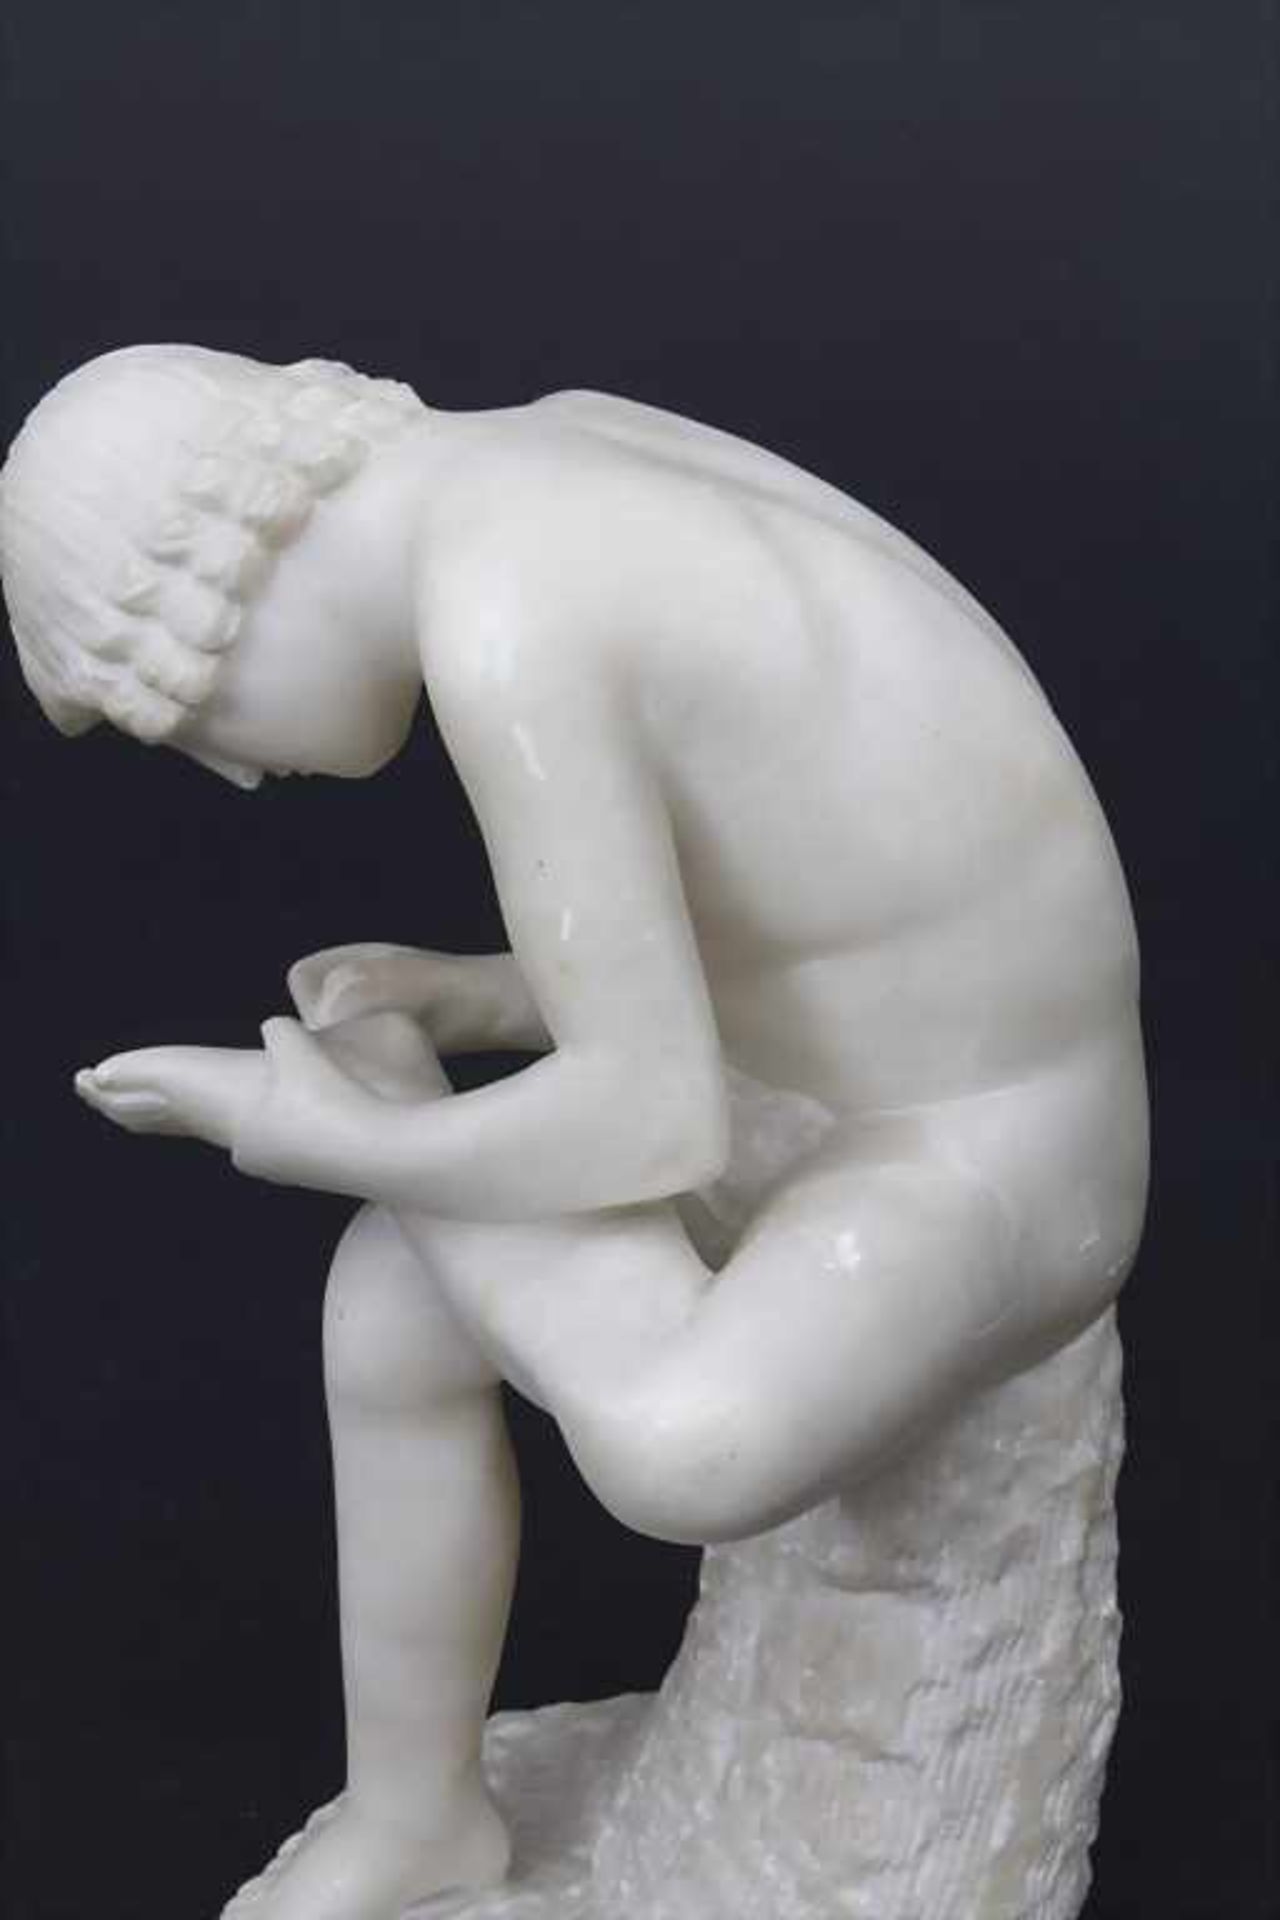 Alabasterskulptur 'Dornauszieher' nach antikem Vorbild / Alabaster sculpture after antique - Image 5 of 5